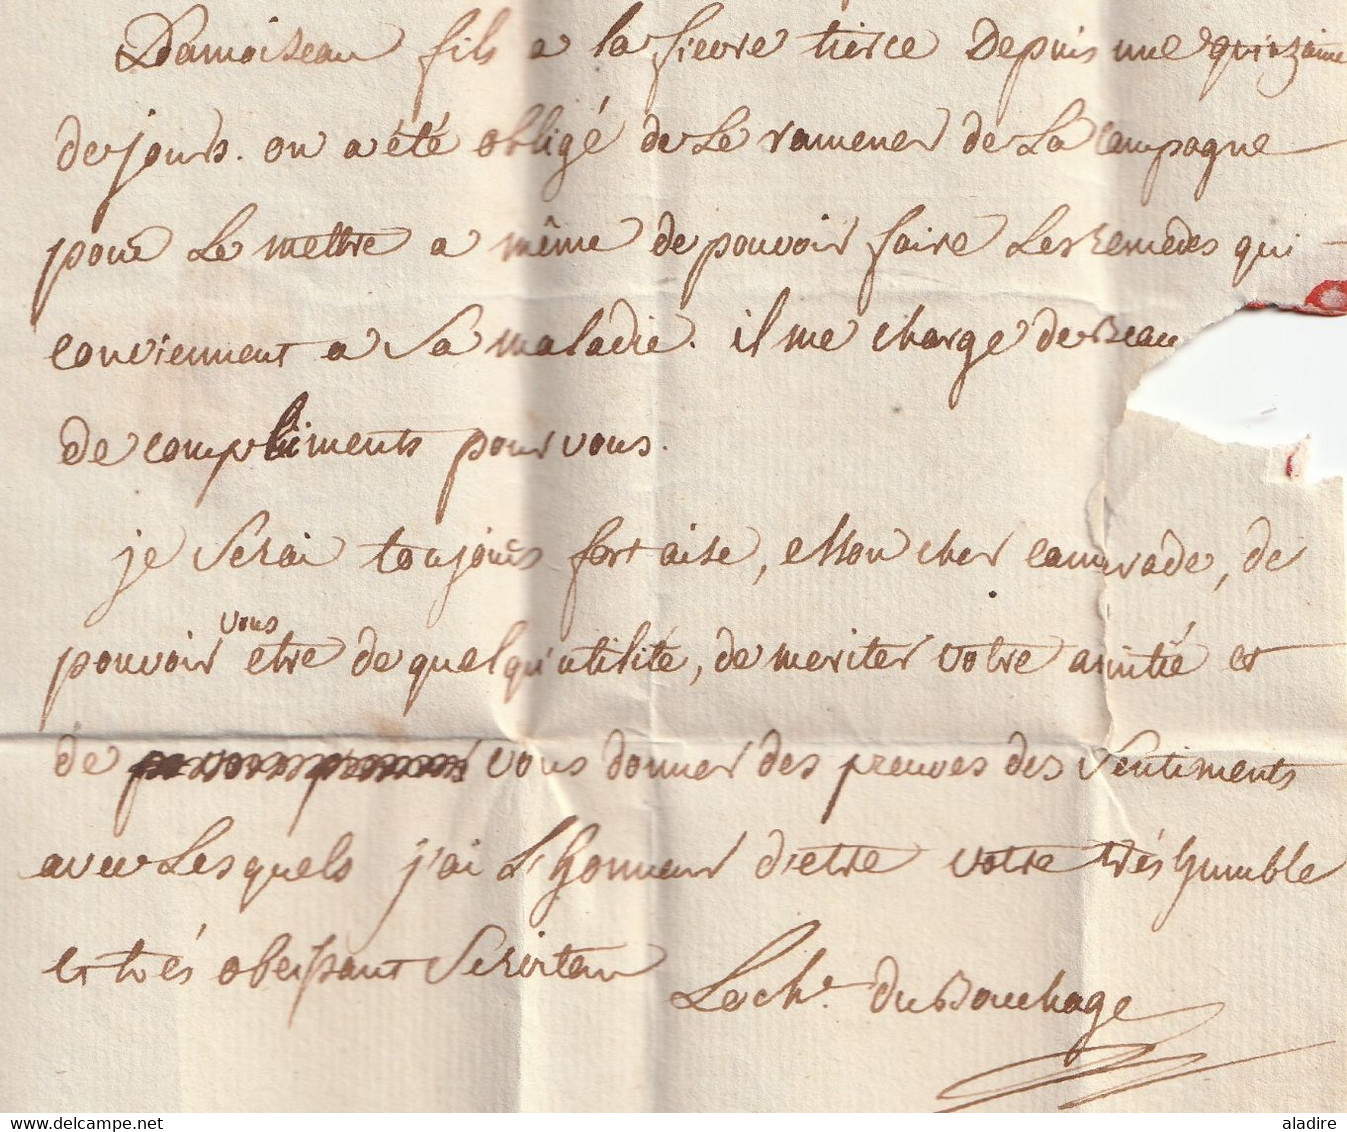 1779  - Marques postales BESANCON & Bourgogne manuscrite sur Lettre pliée de 3 p entre officiers vers CHALONS sur SAONE